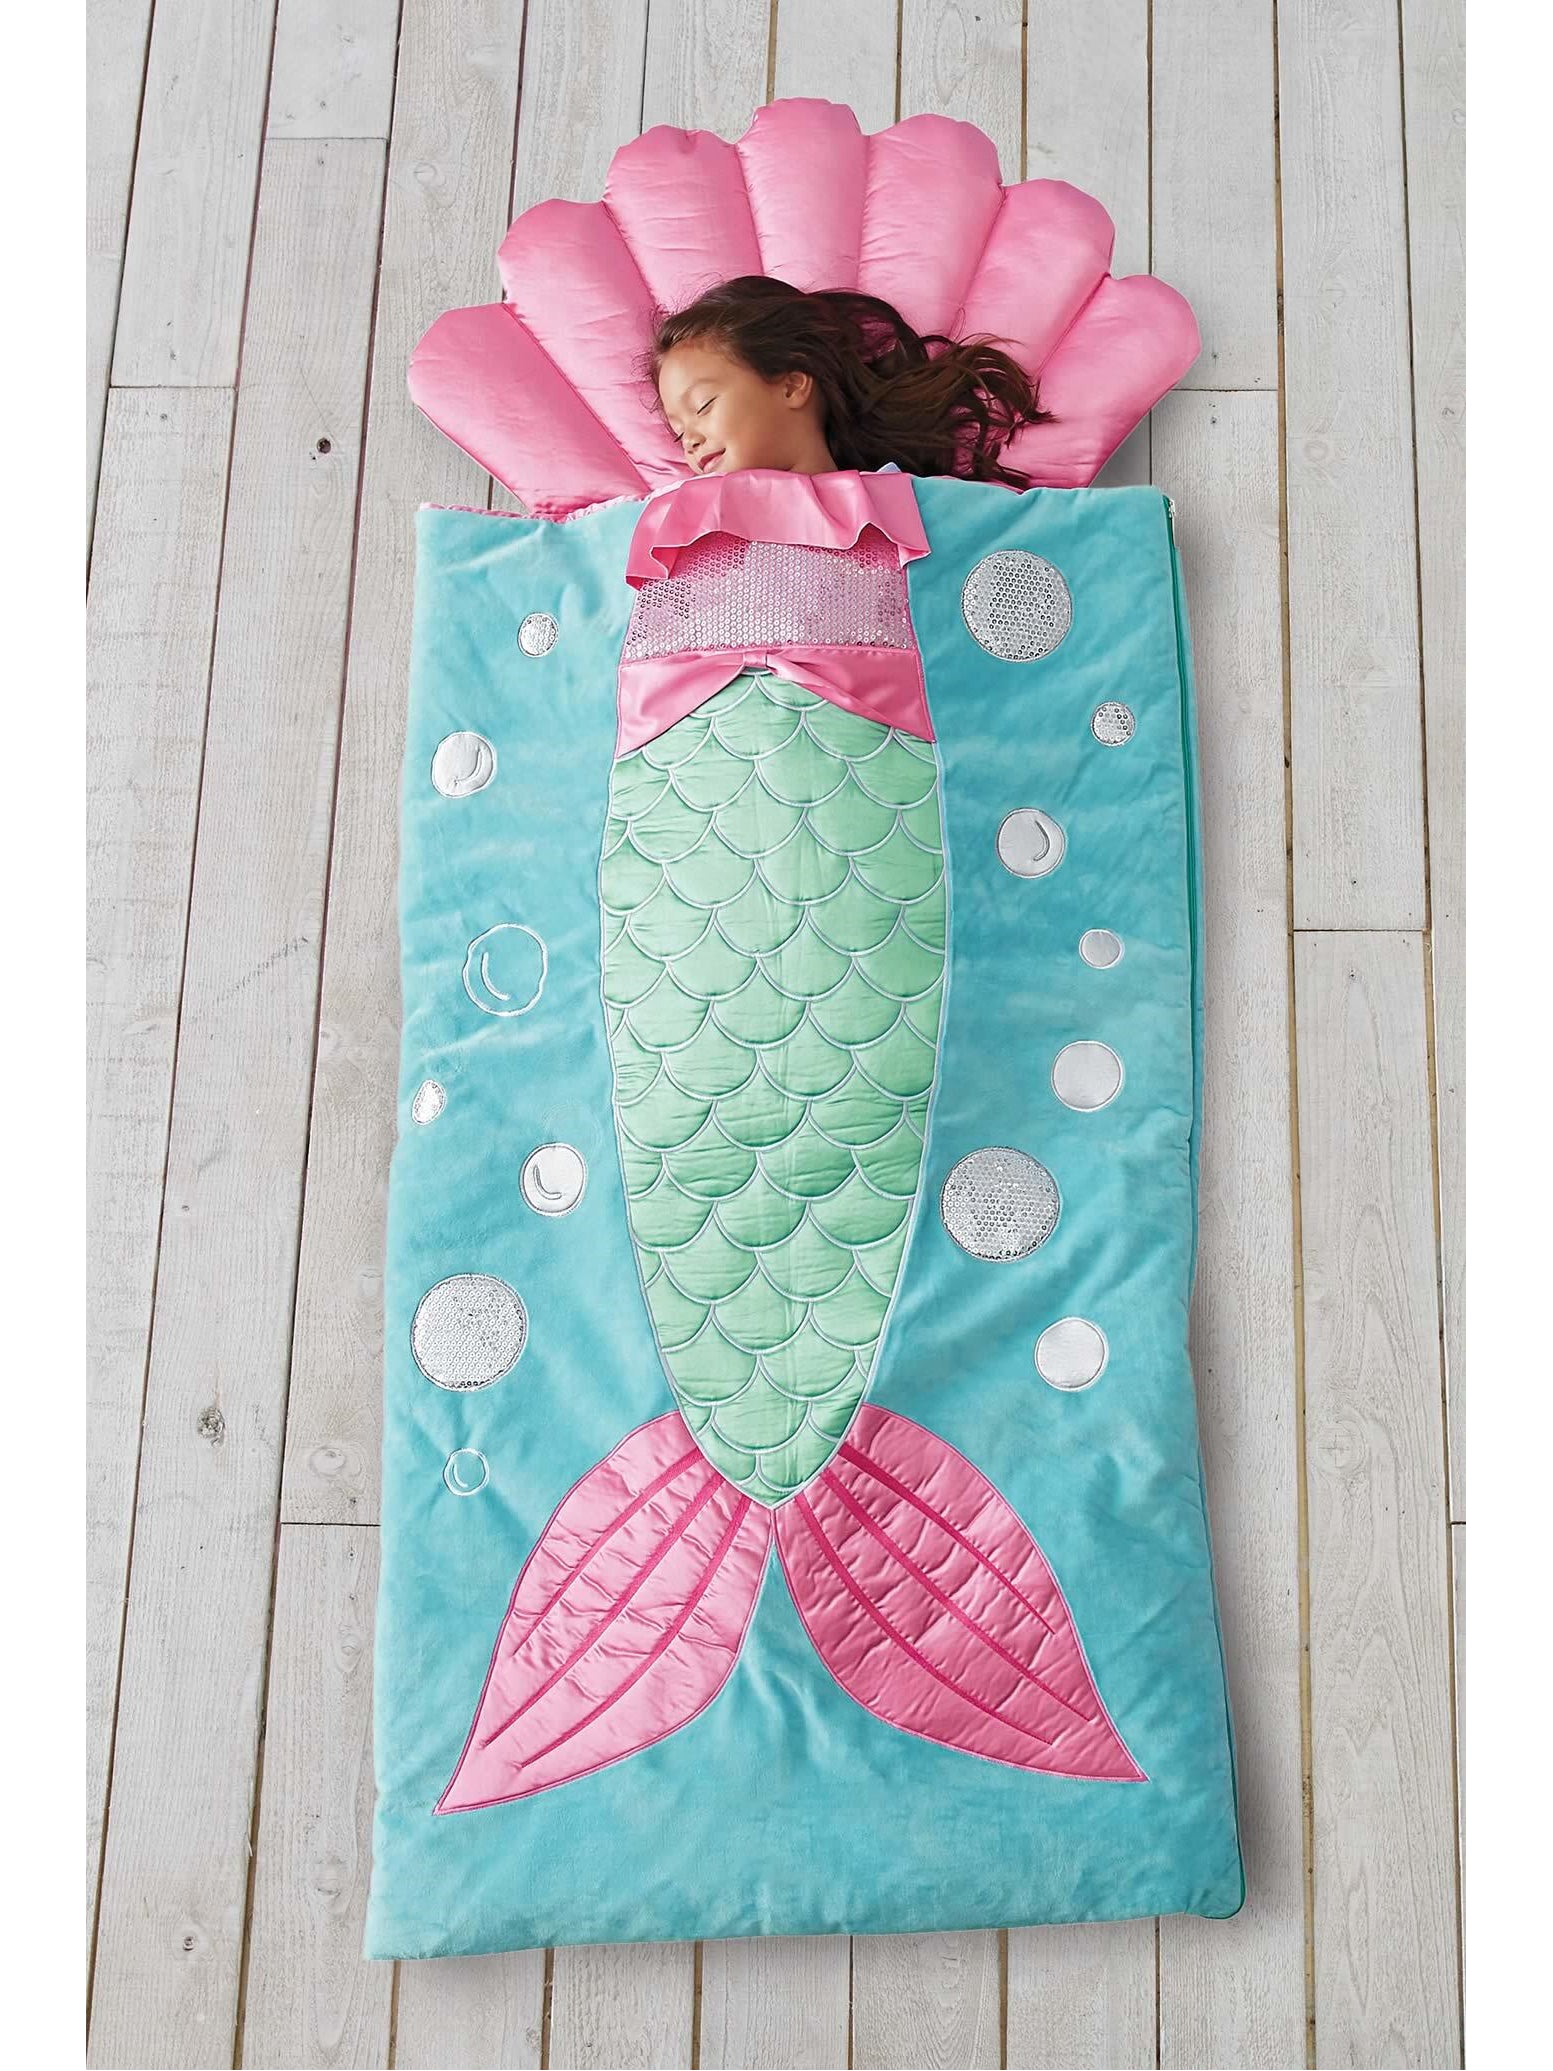 mermaid sleep sack